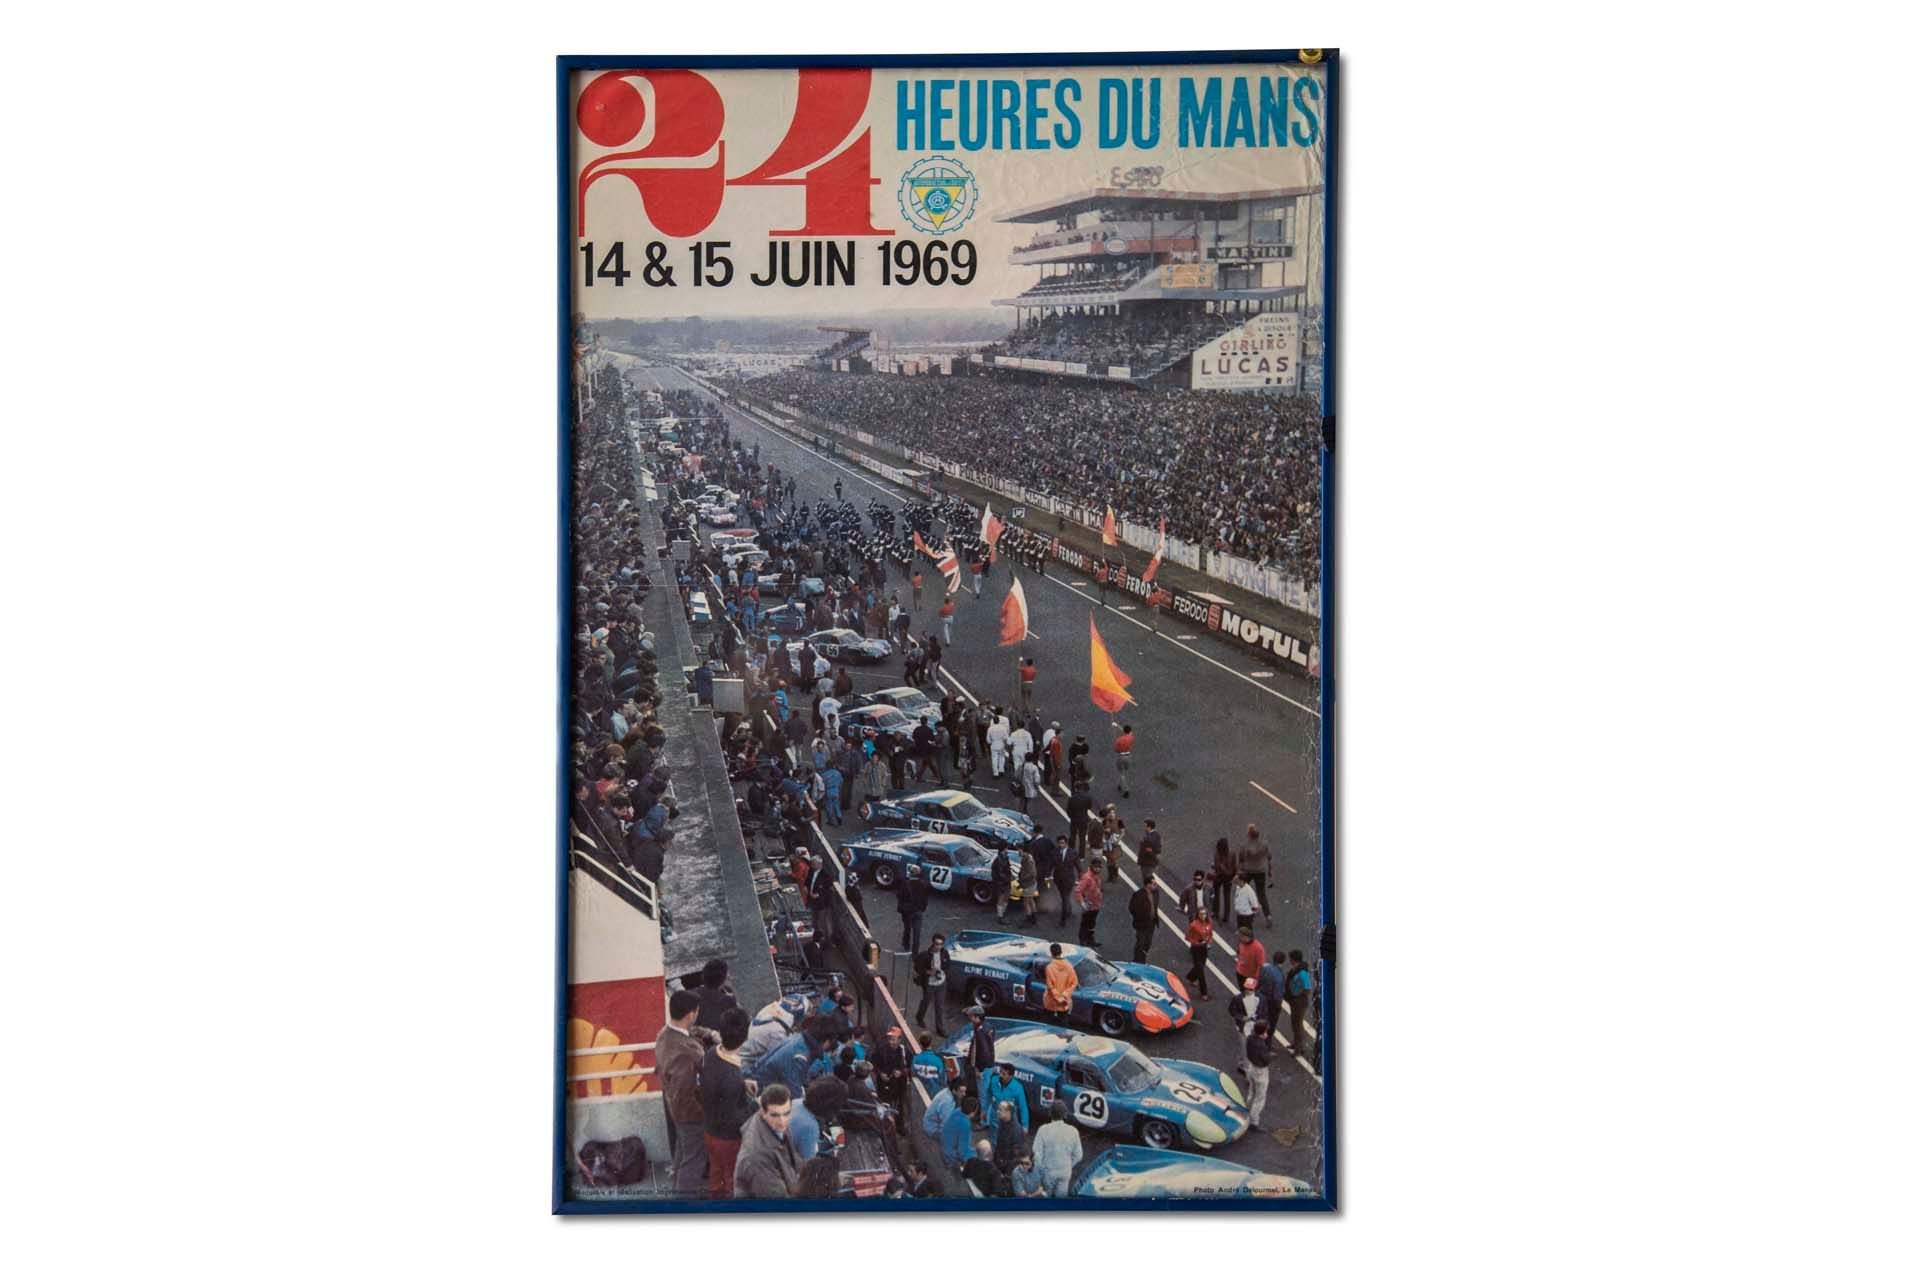 For Sale Framed Original '1969 24 heures du Mans' Event Poster